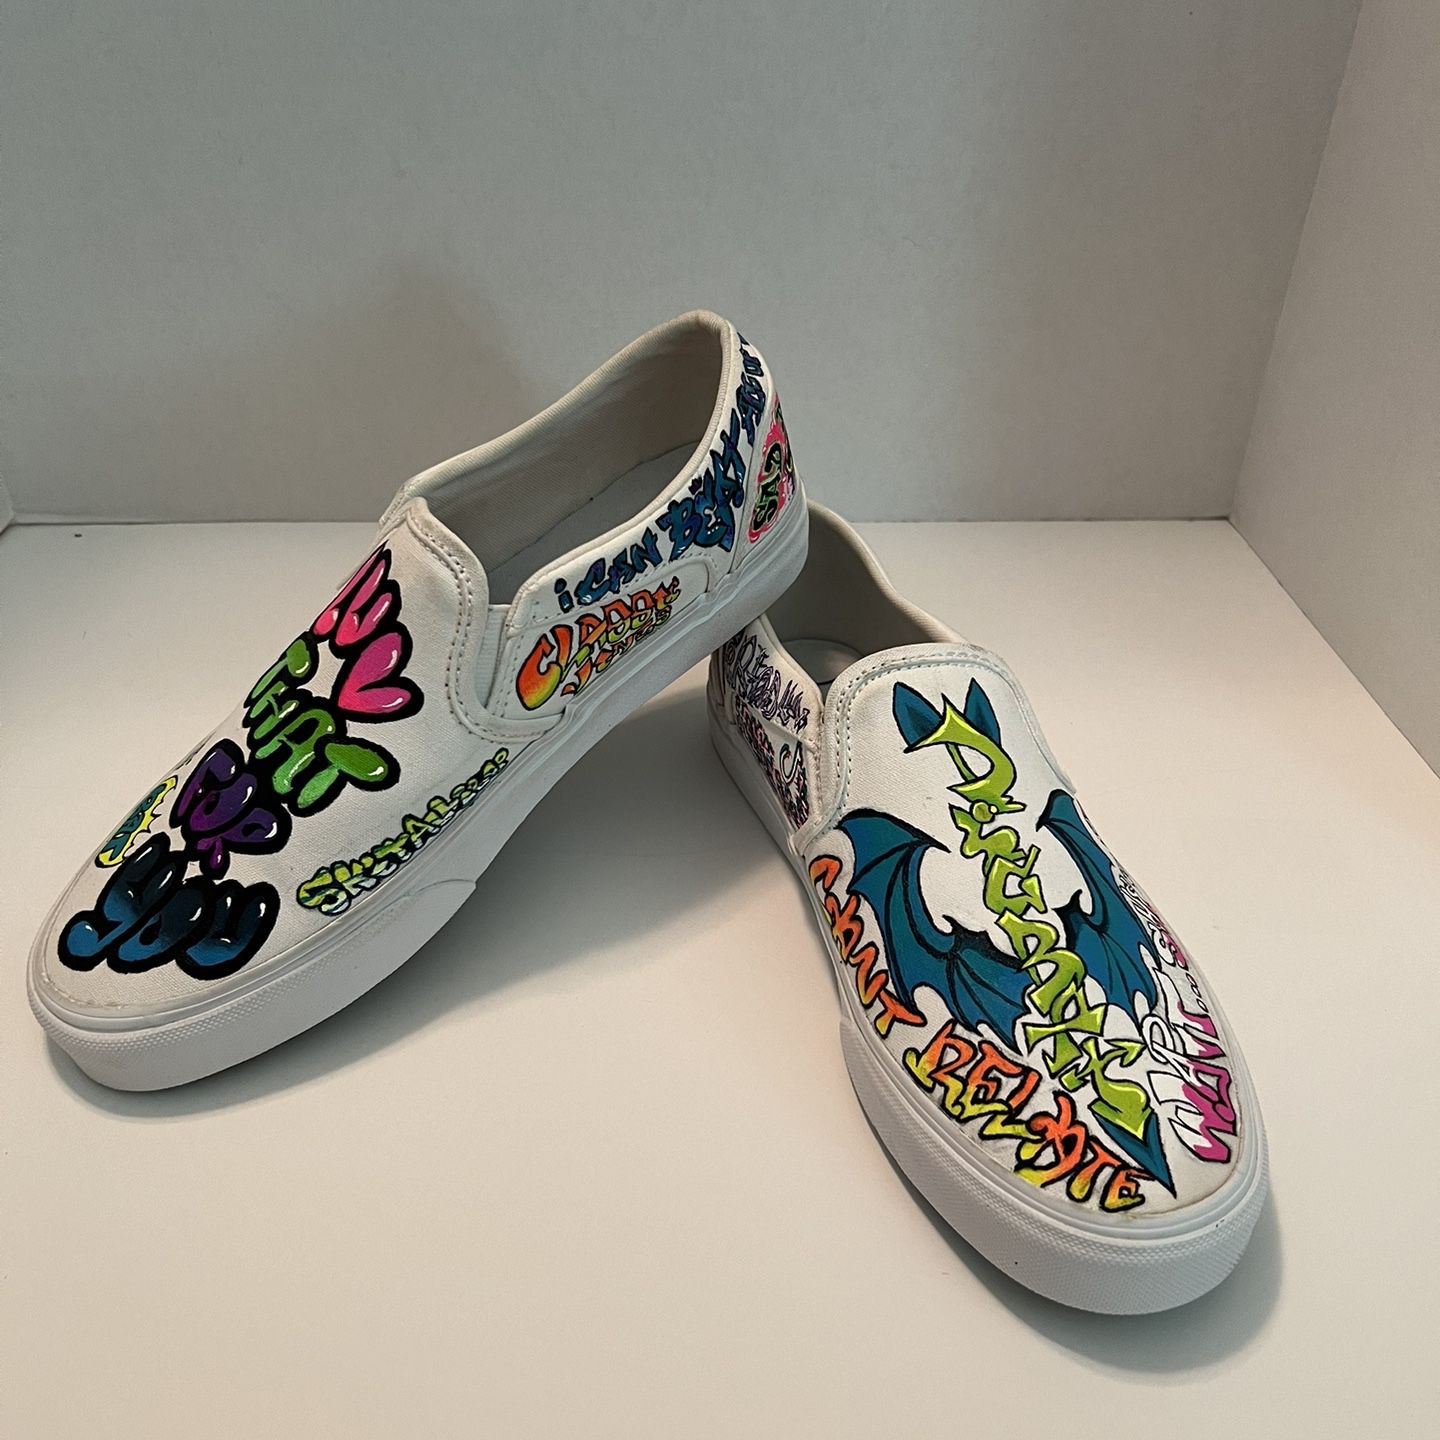 Vans Slip On Multicolor Custom Art Canvas Low Shoes Woman’s Size 8.5